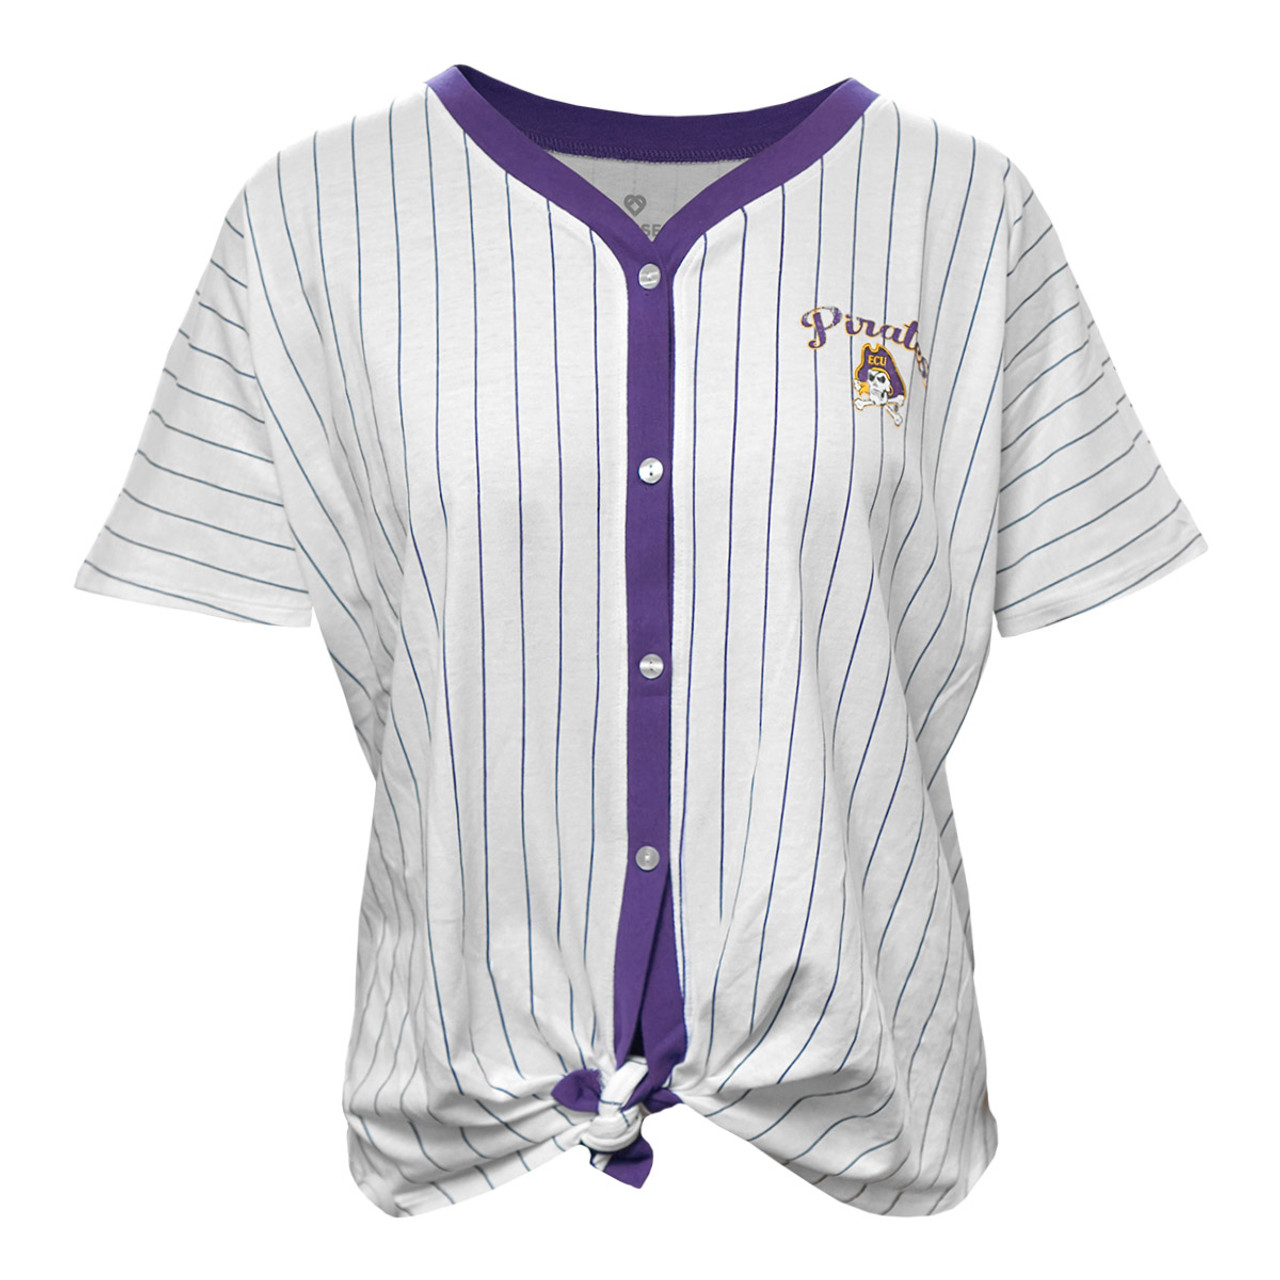 purple and white baseball jersey